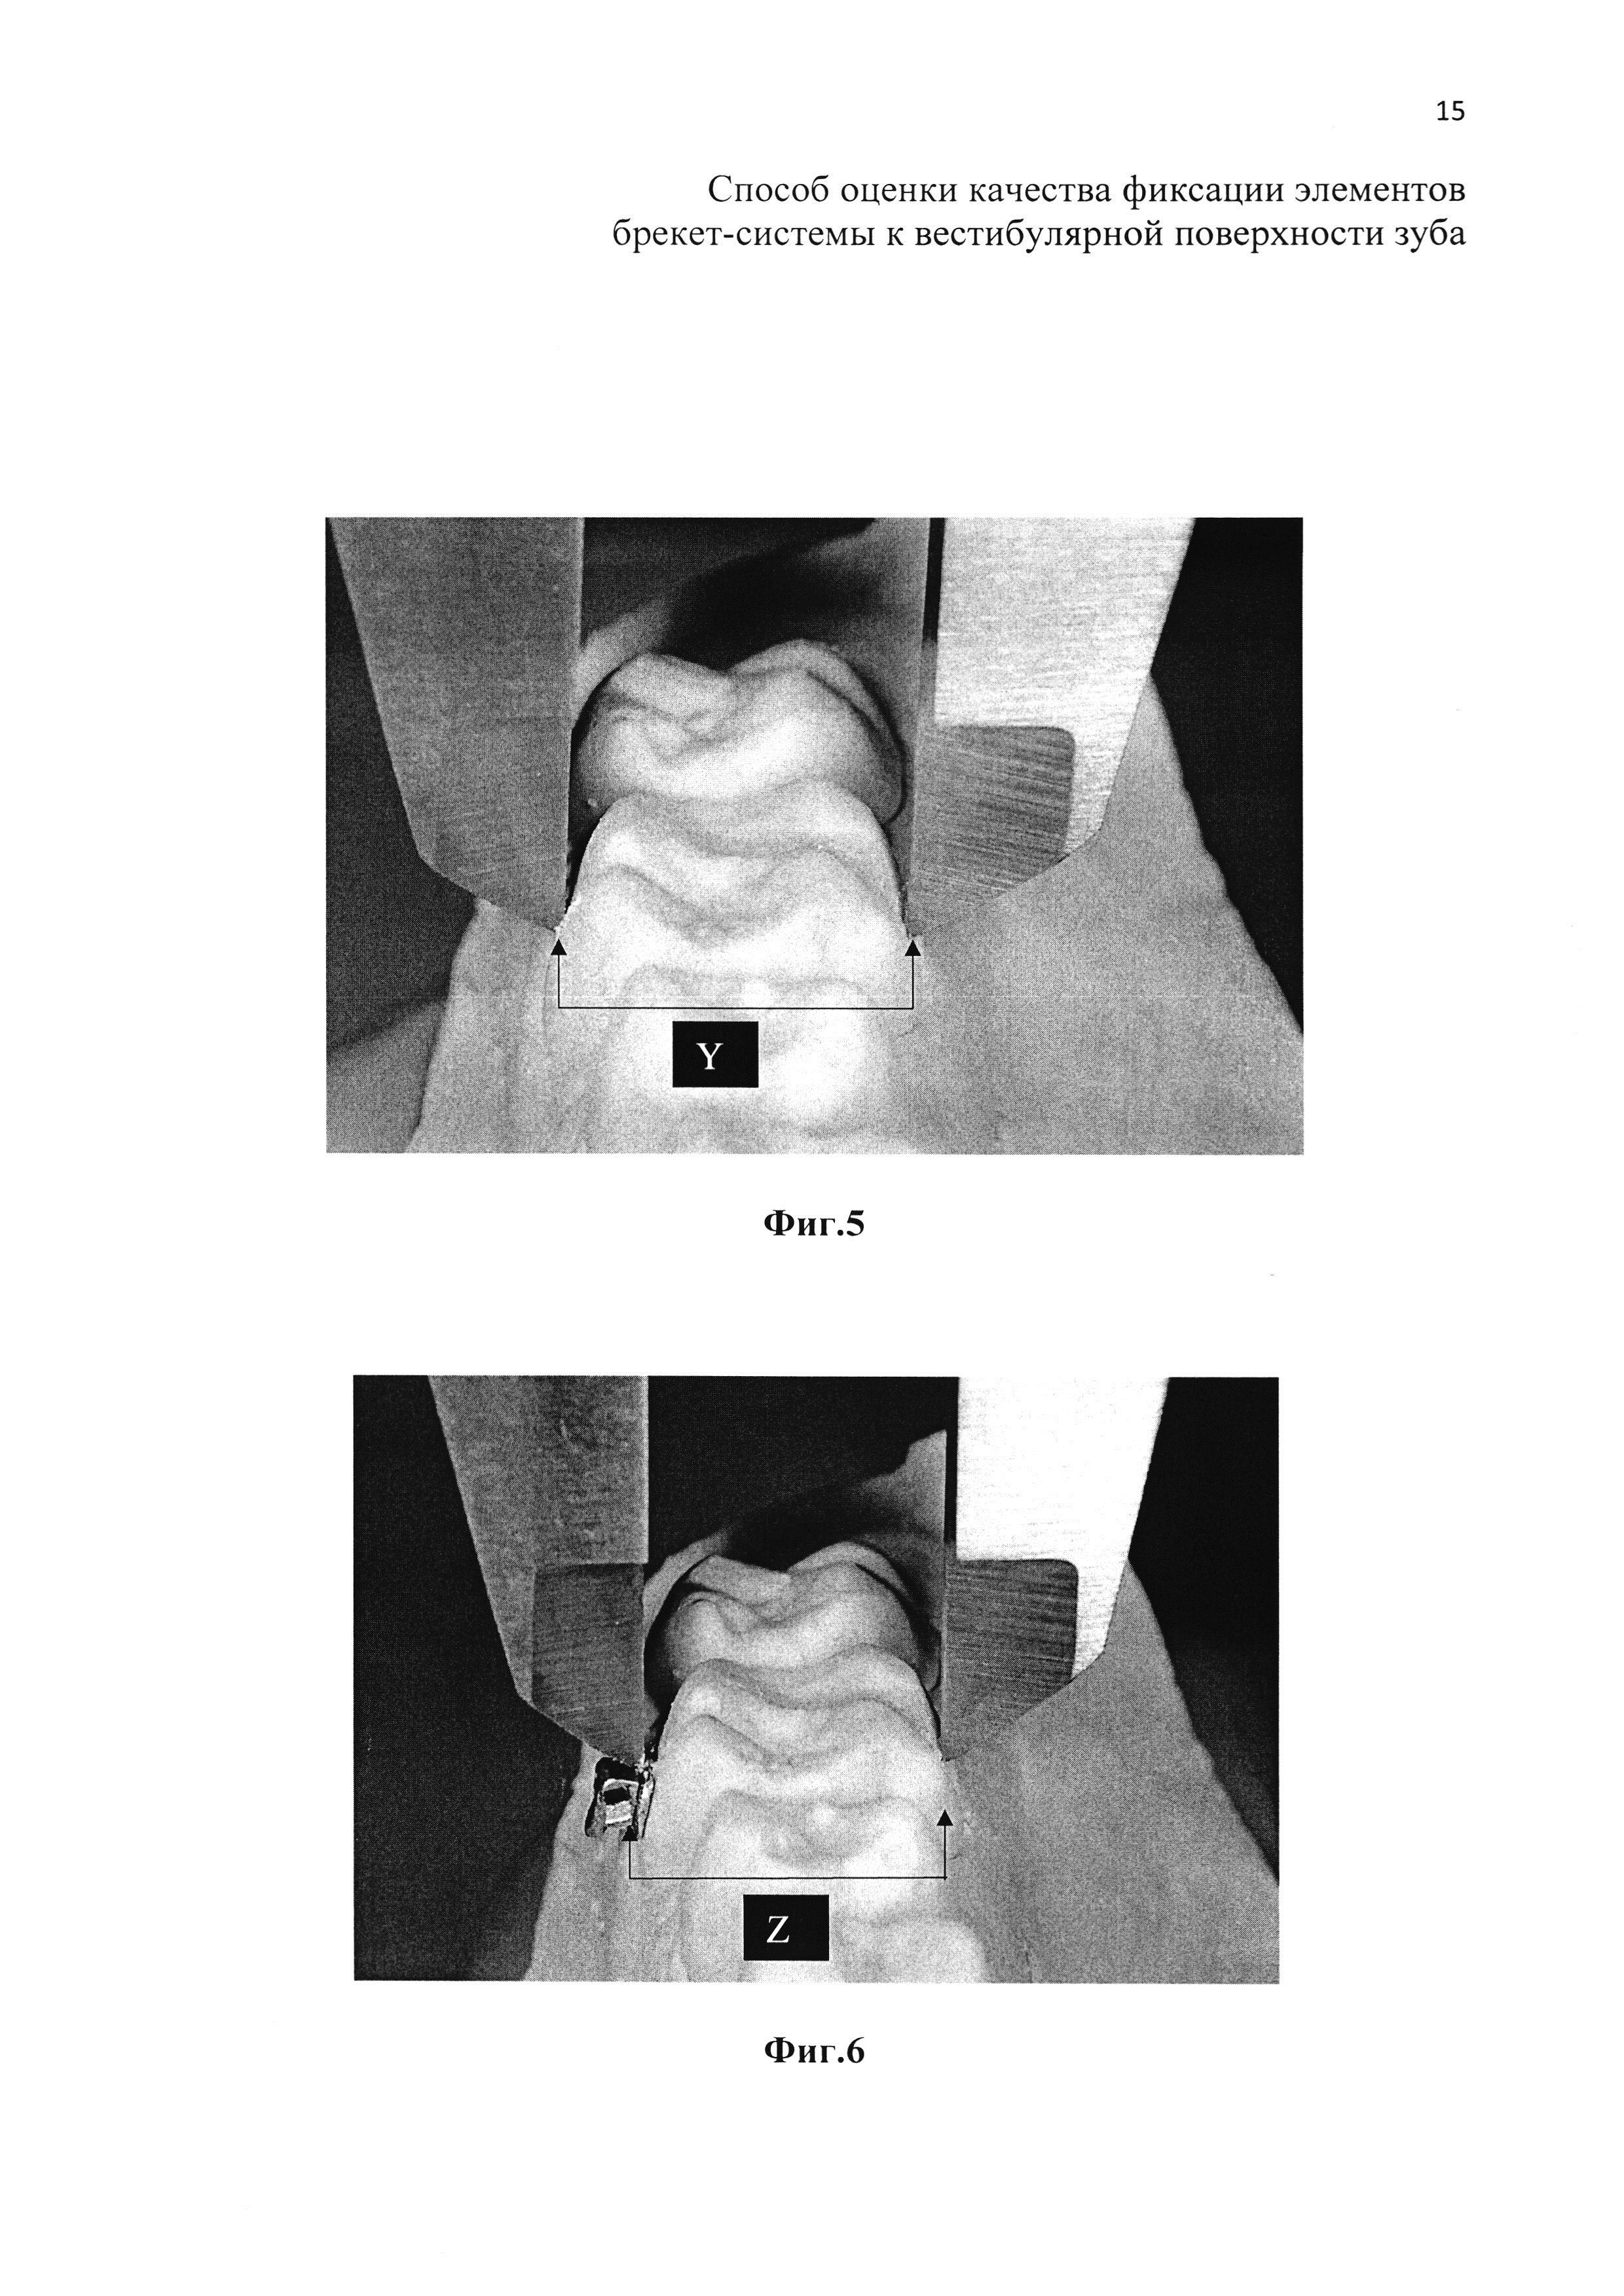 Способ оценки качества фиксации элементов брекет-системы к вестибулярной поверхности зуба